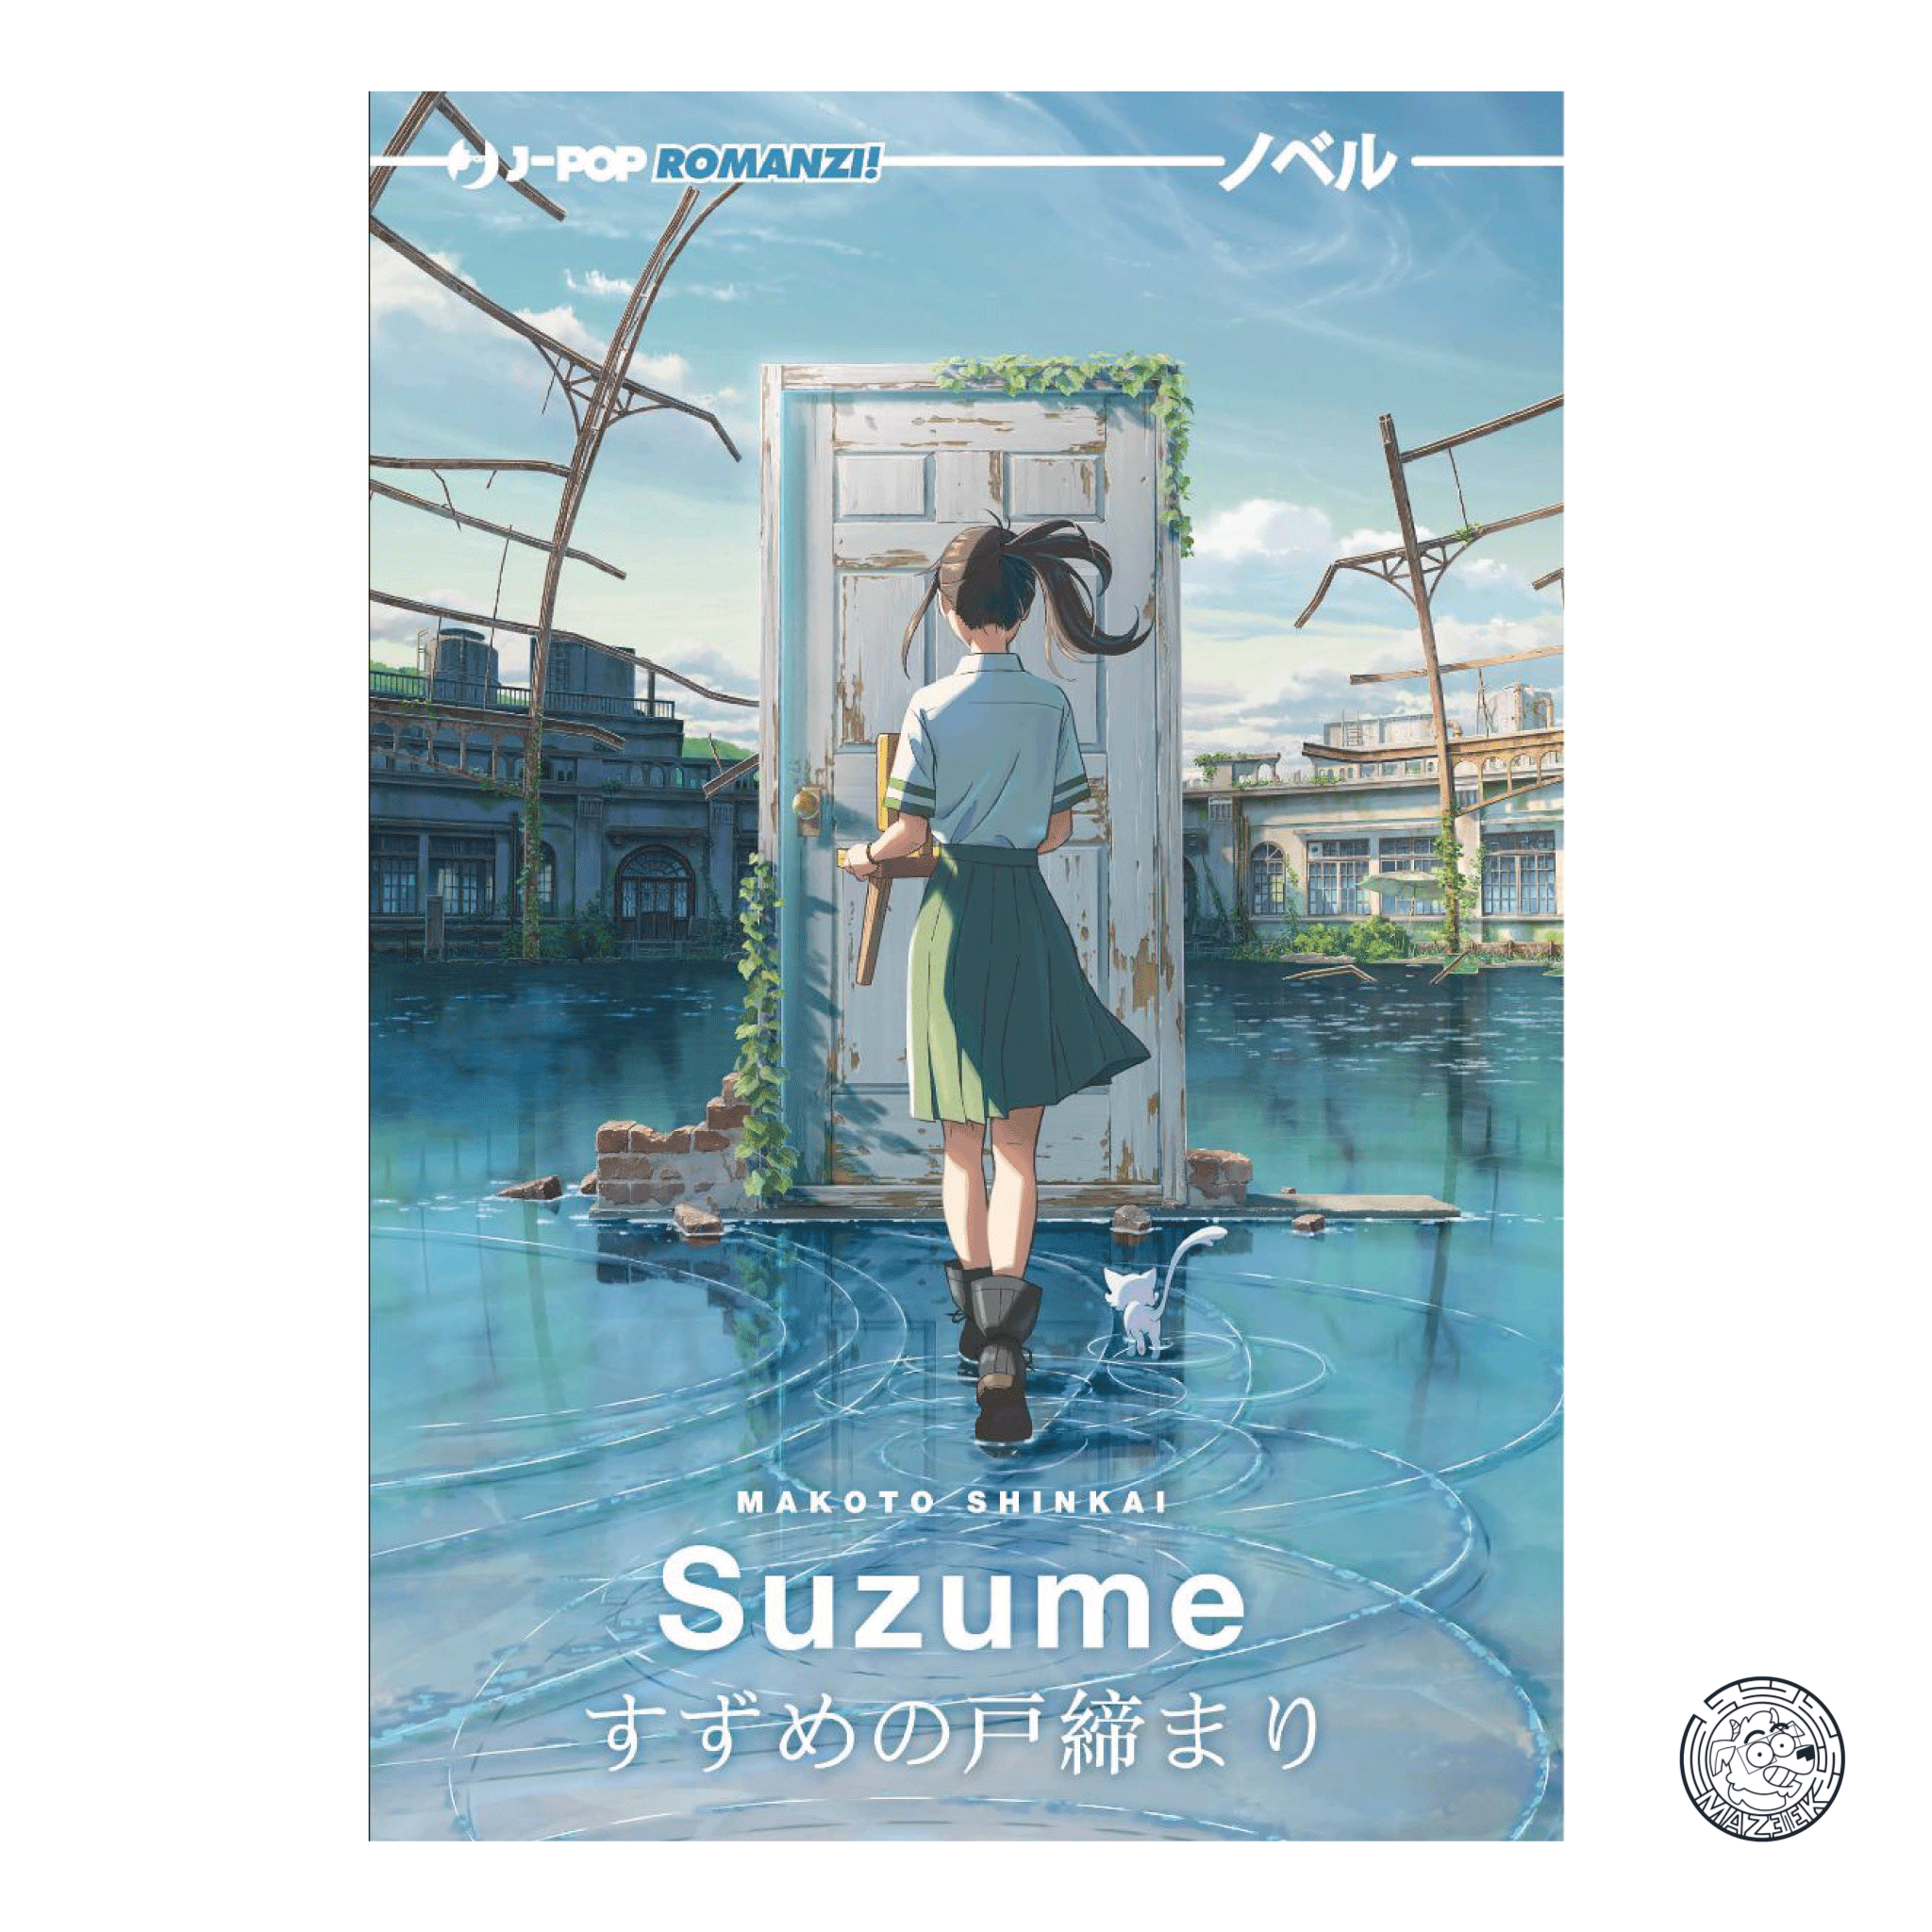 Suzume - Romanzo